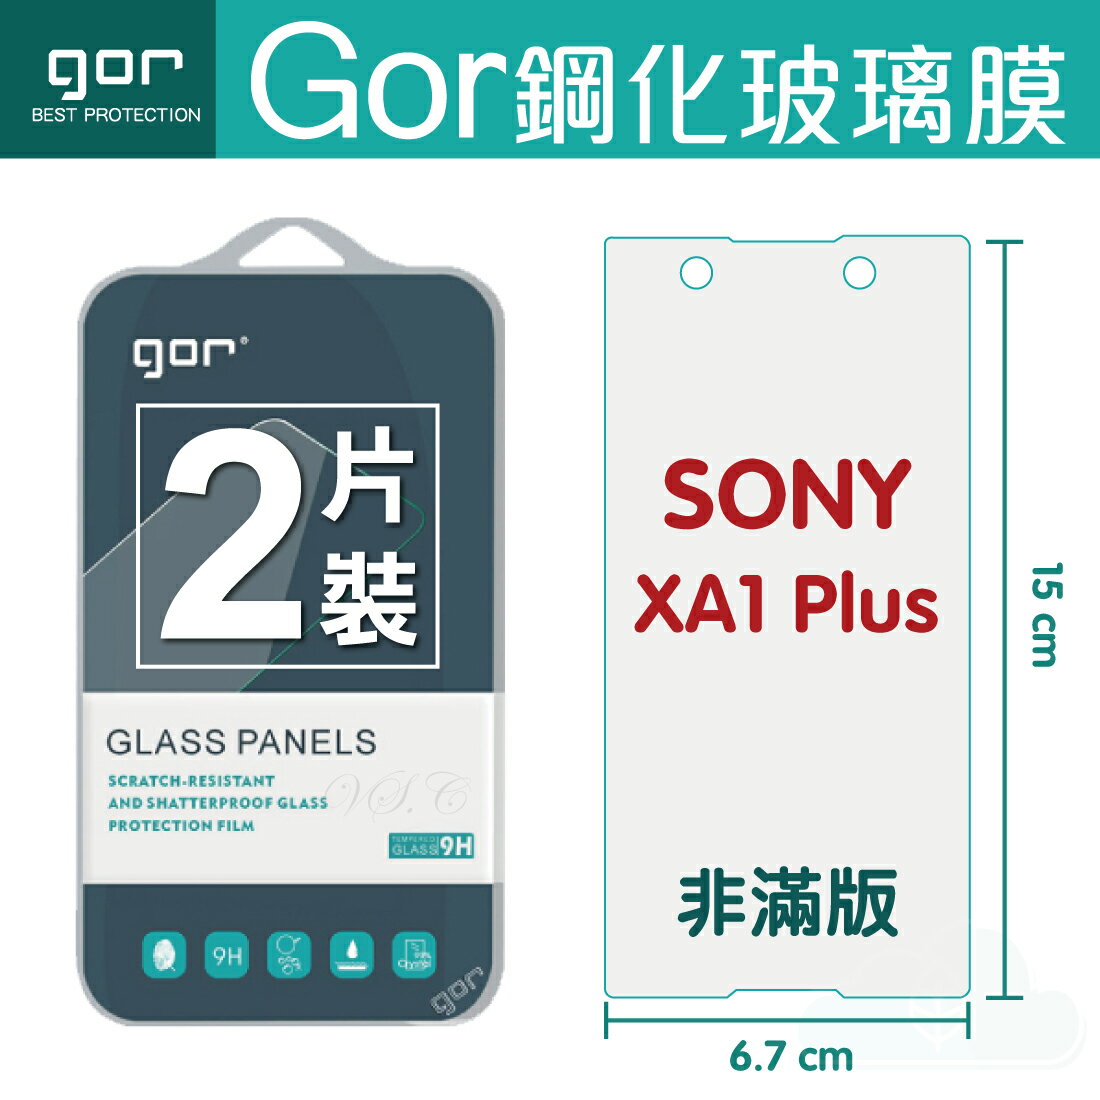 【SONY】GOR 9H SONY Xperia XA1 Plus 鋼化 玻璃 保護貼 全透明非滿版 兩片裝【全館滿299免運費】